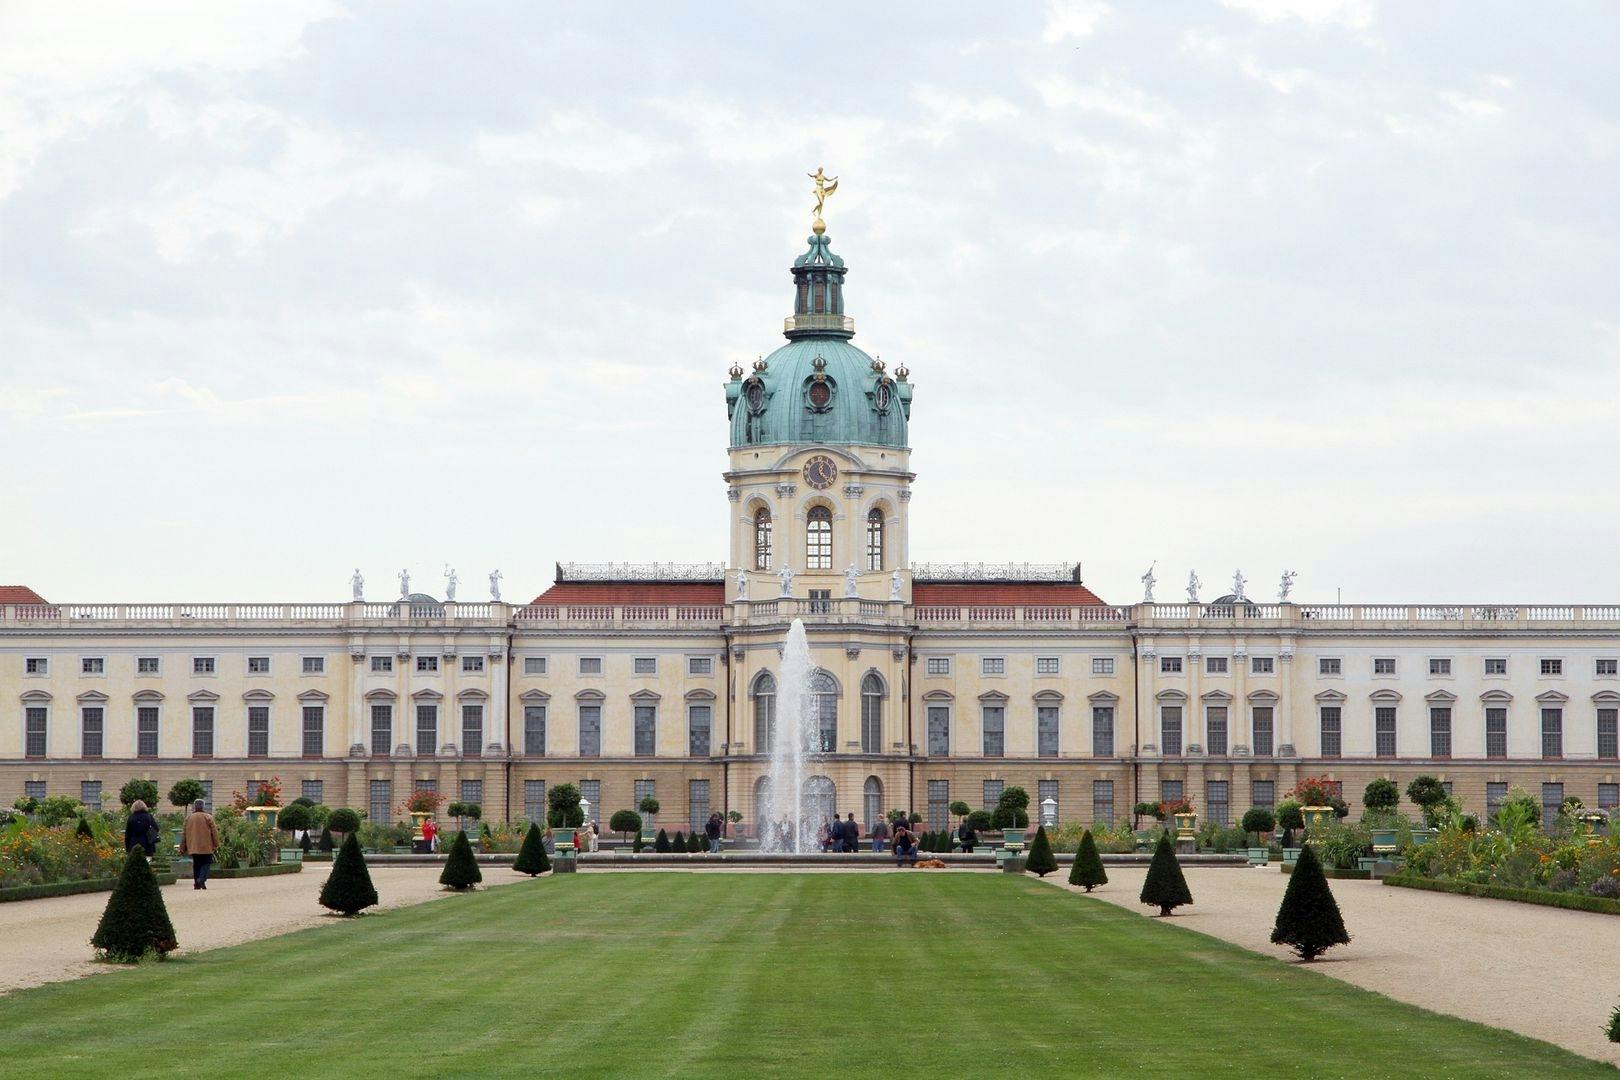 Selbstgeführte Audiotour durch das Schloss Charlottenburg und die Gärten